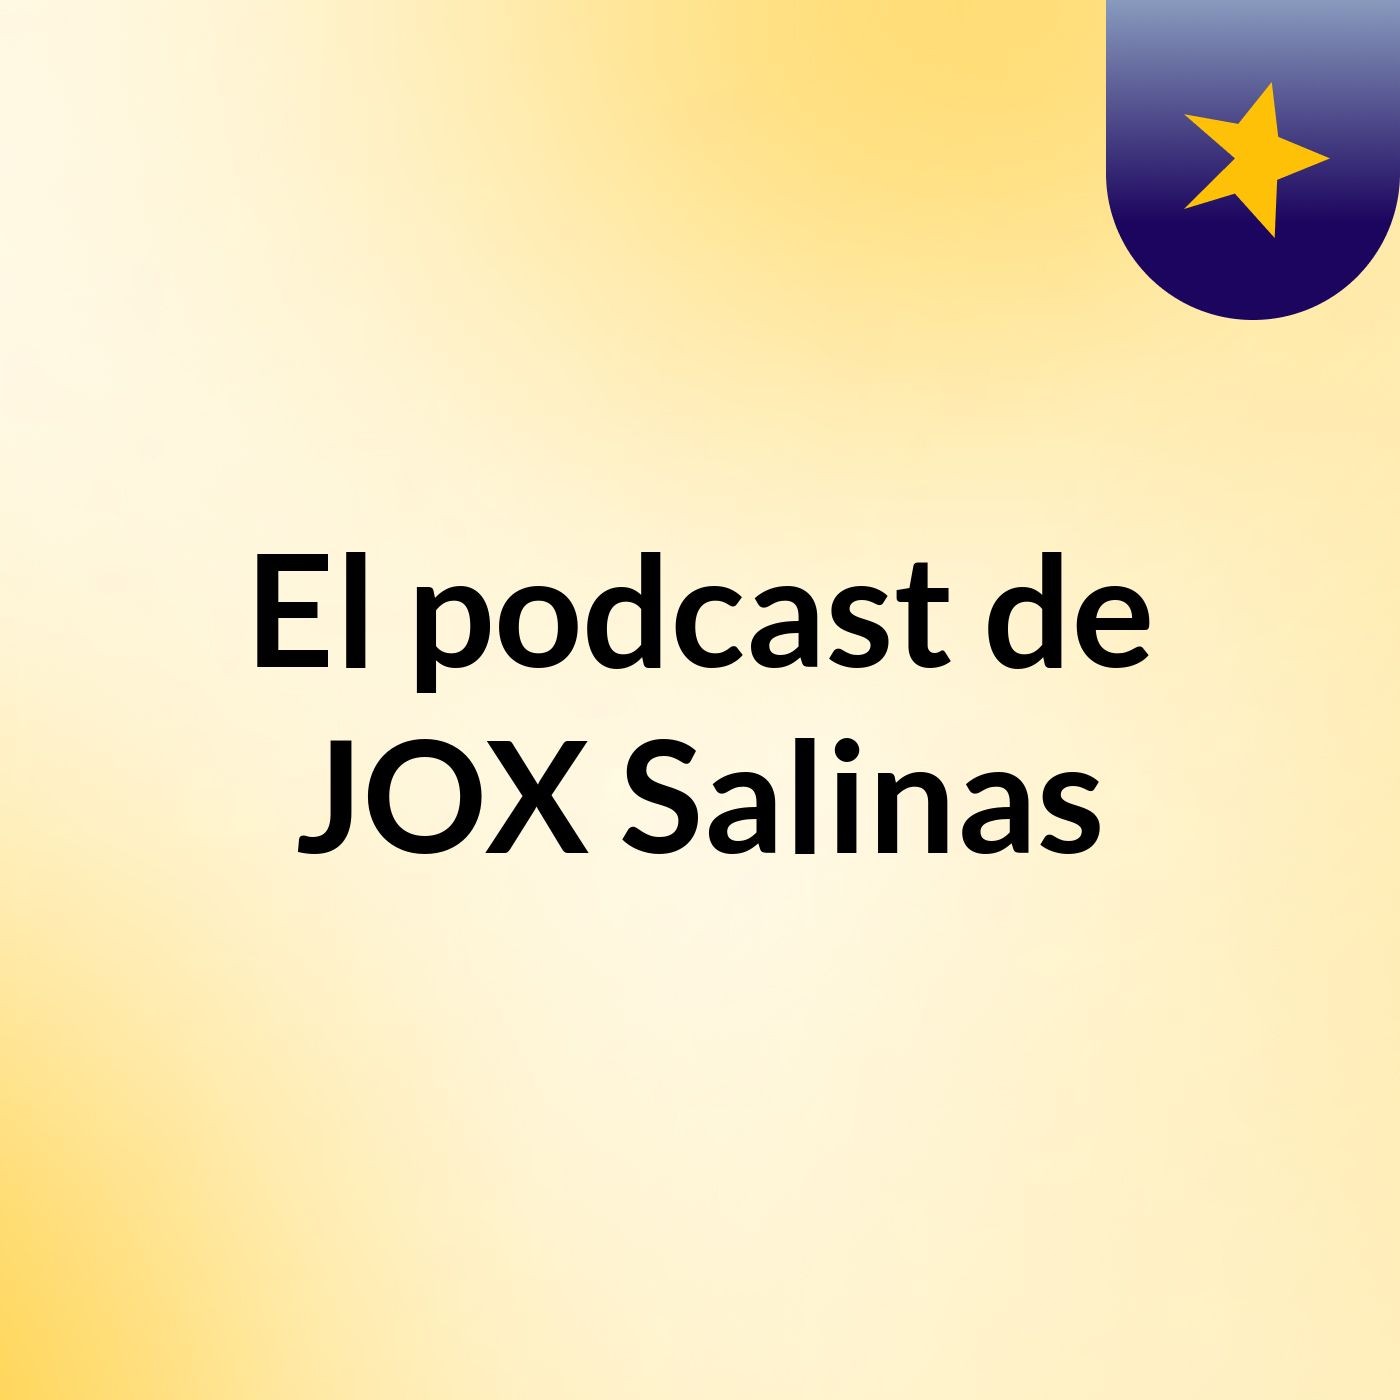 El podcast de JOX Salinas